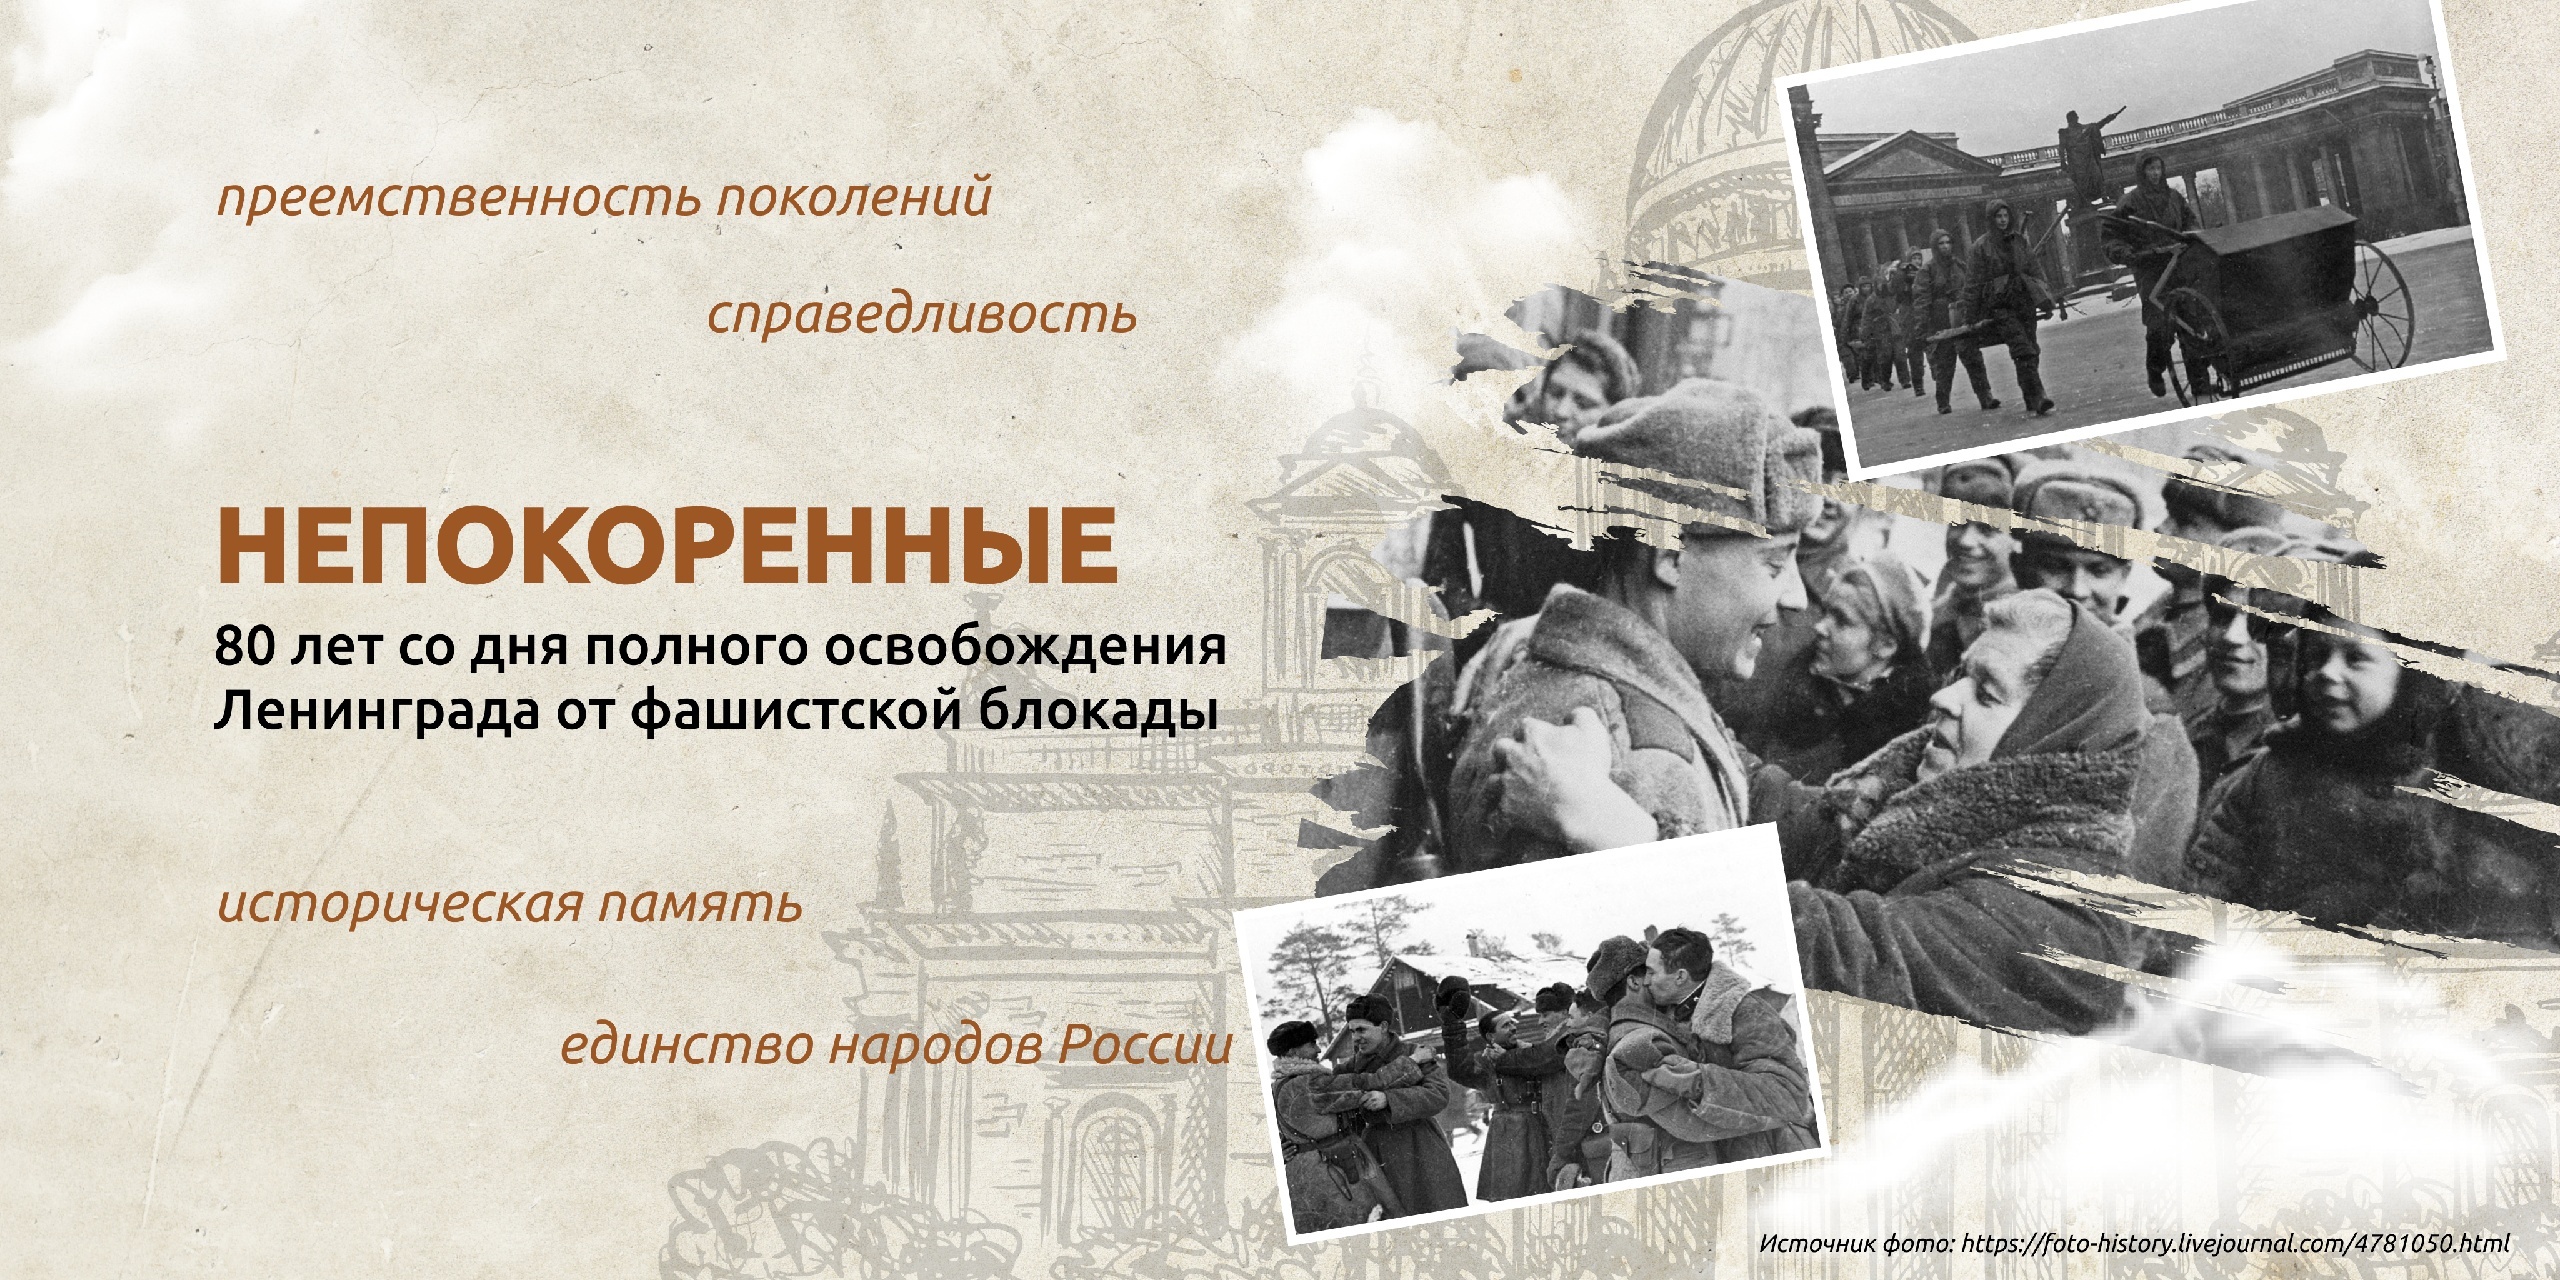 &amp;quot;Непокоренные. 80 лет со дня полного освобождения Ленинграда от фашистской блокады&amp;quot;.